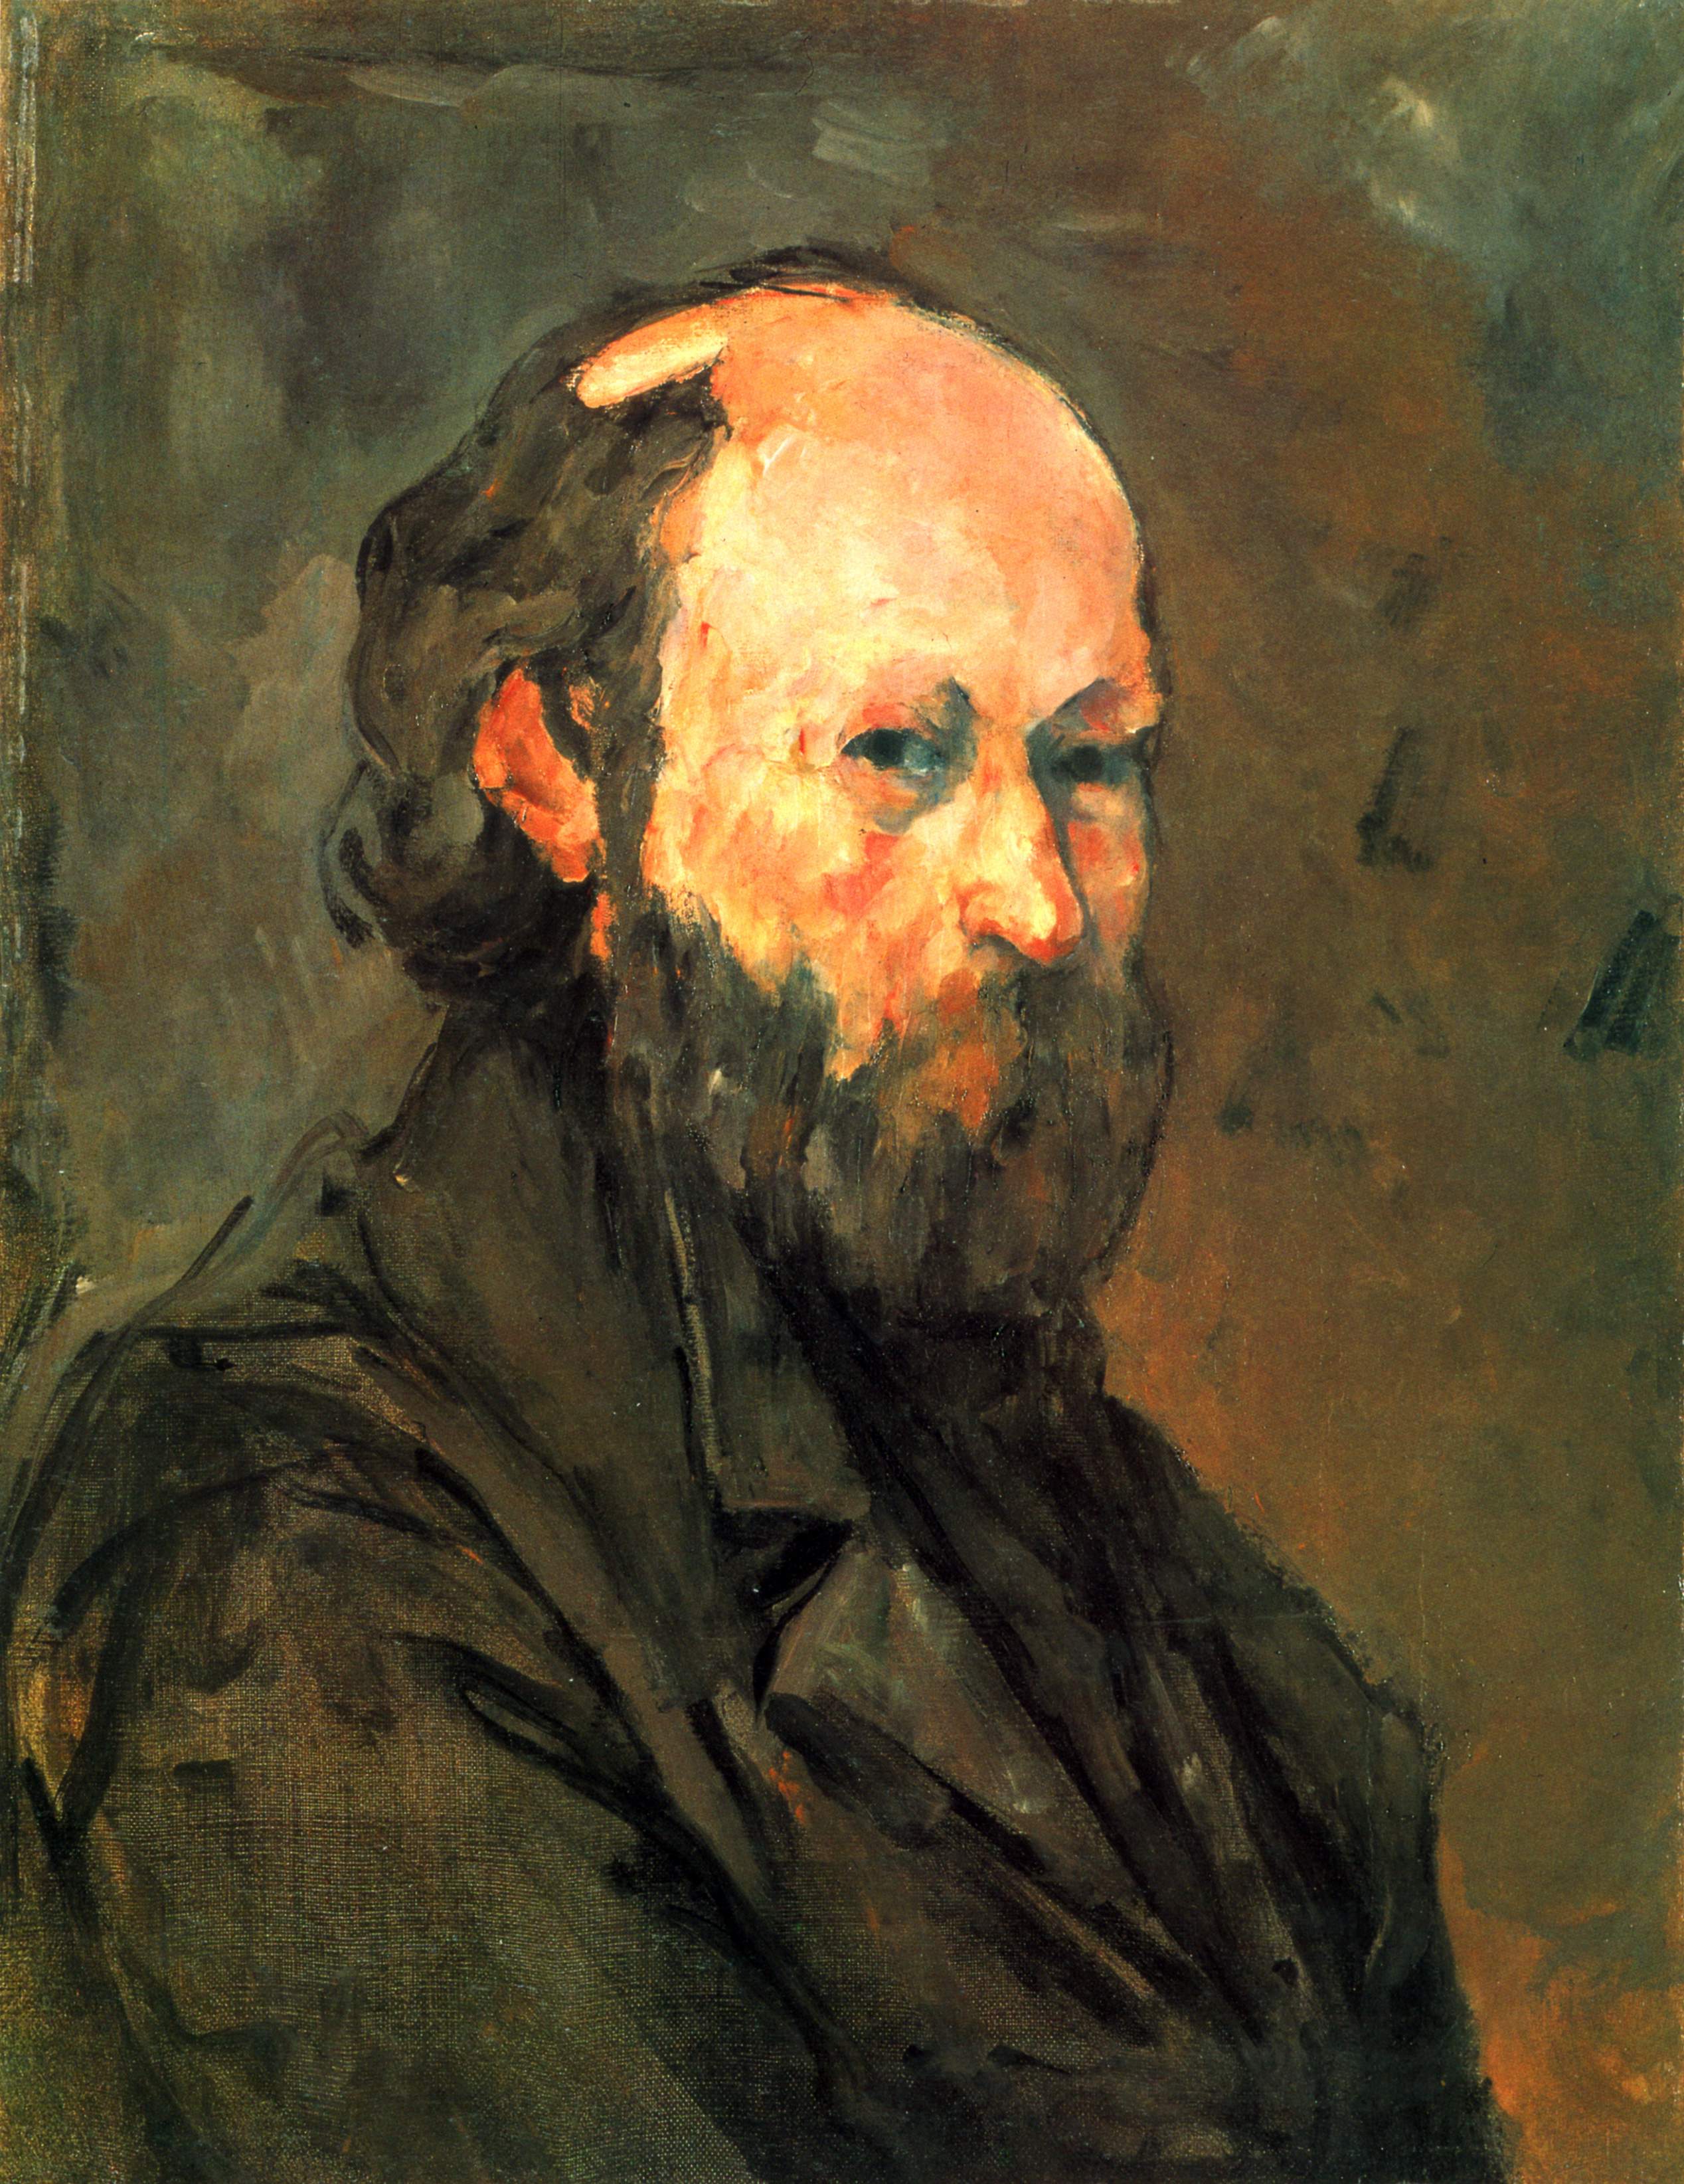 Paul Cézanne. Self-portrait. Oil on canvas. 1880.